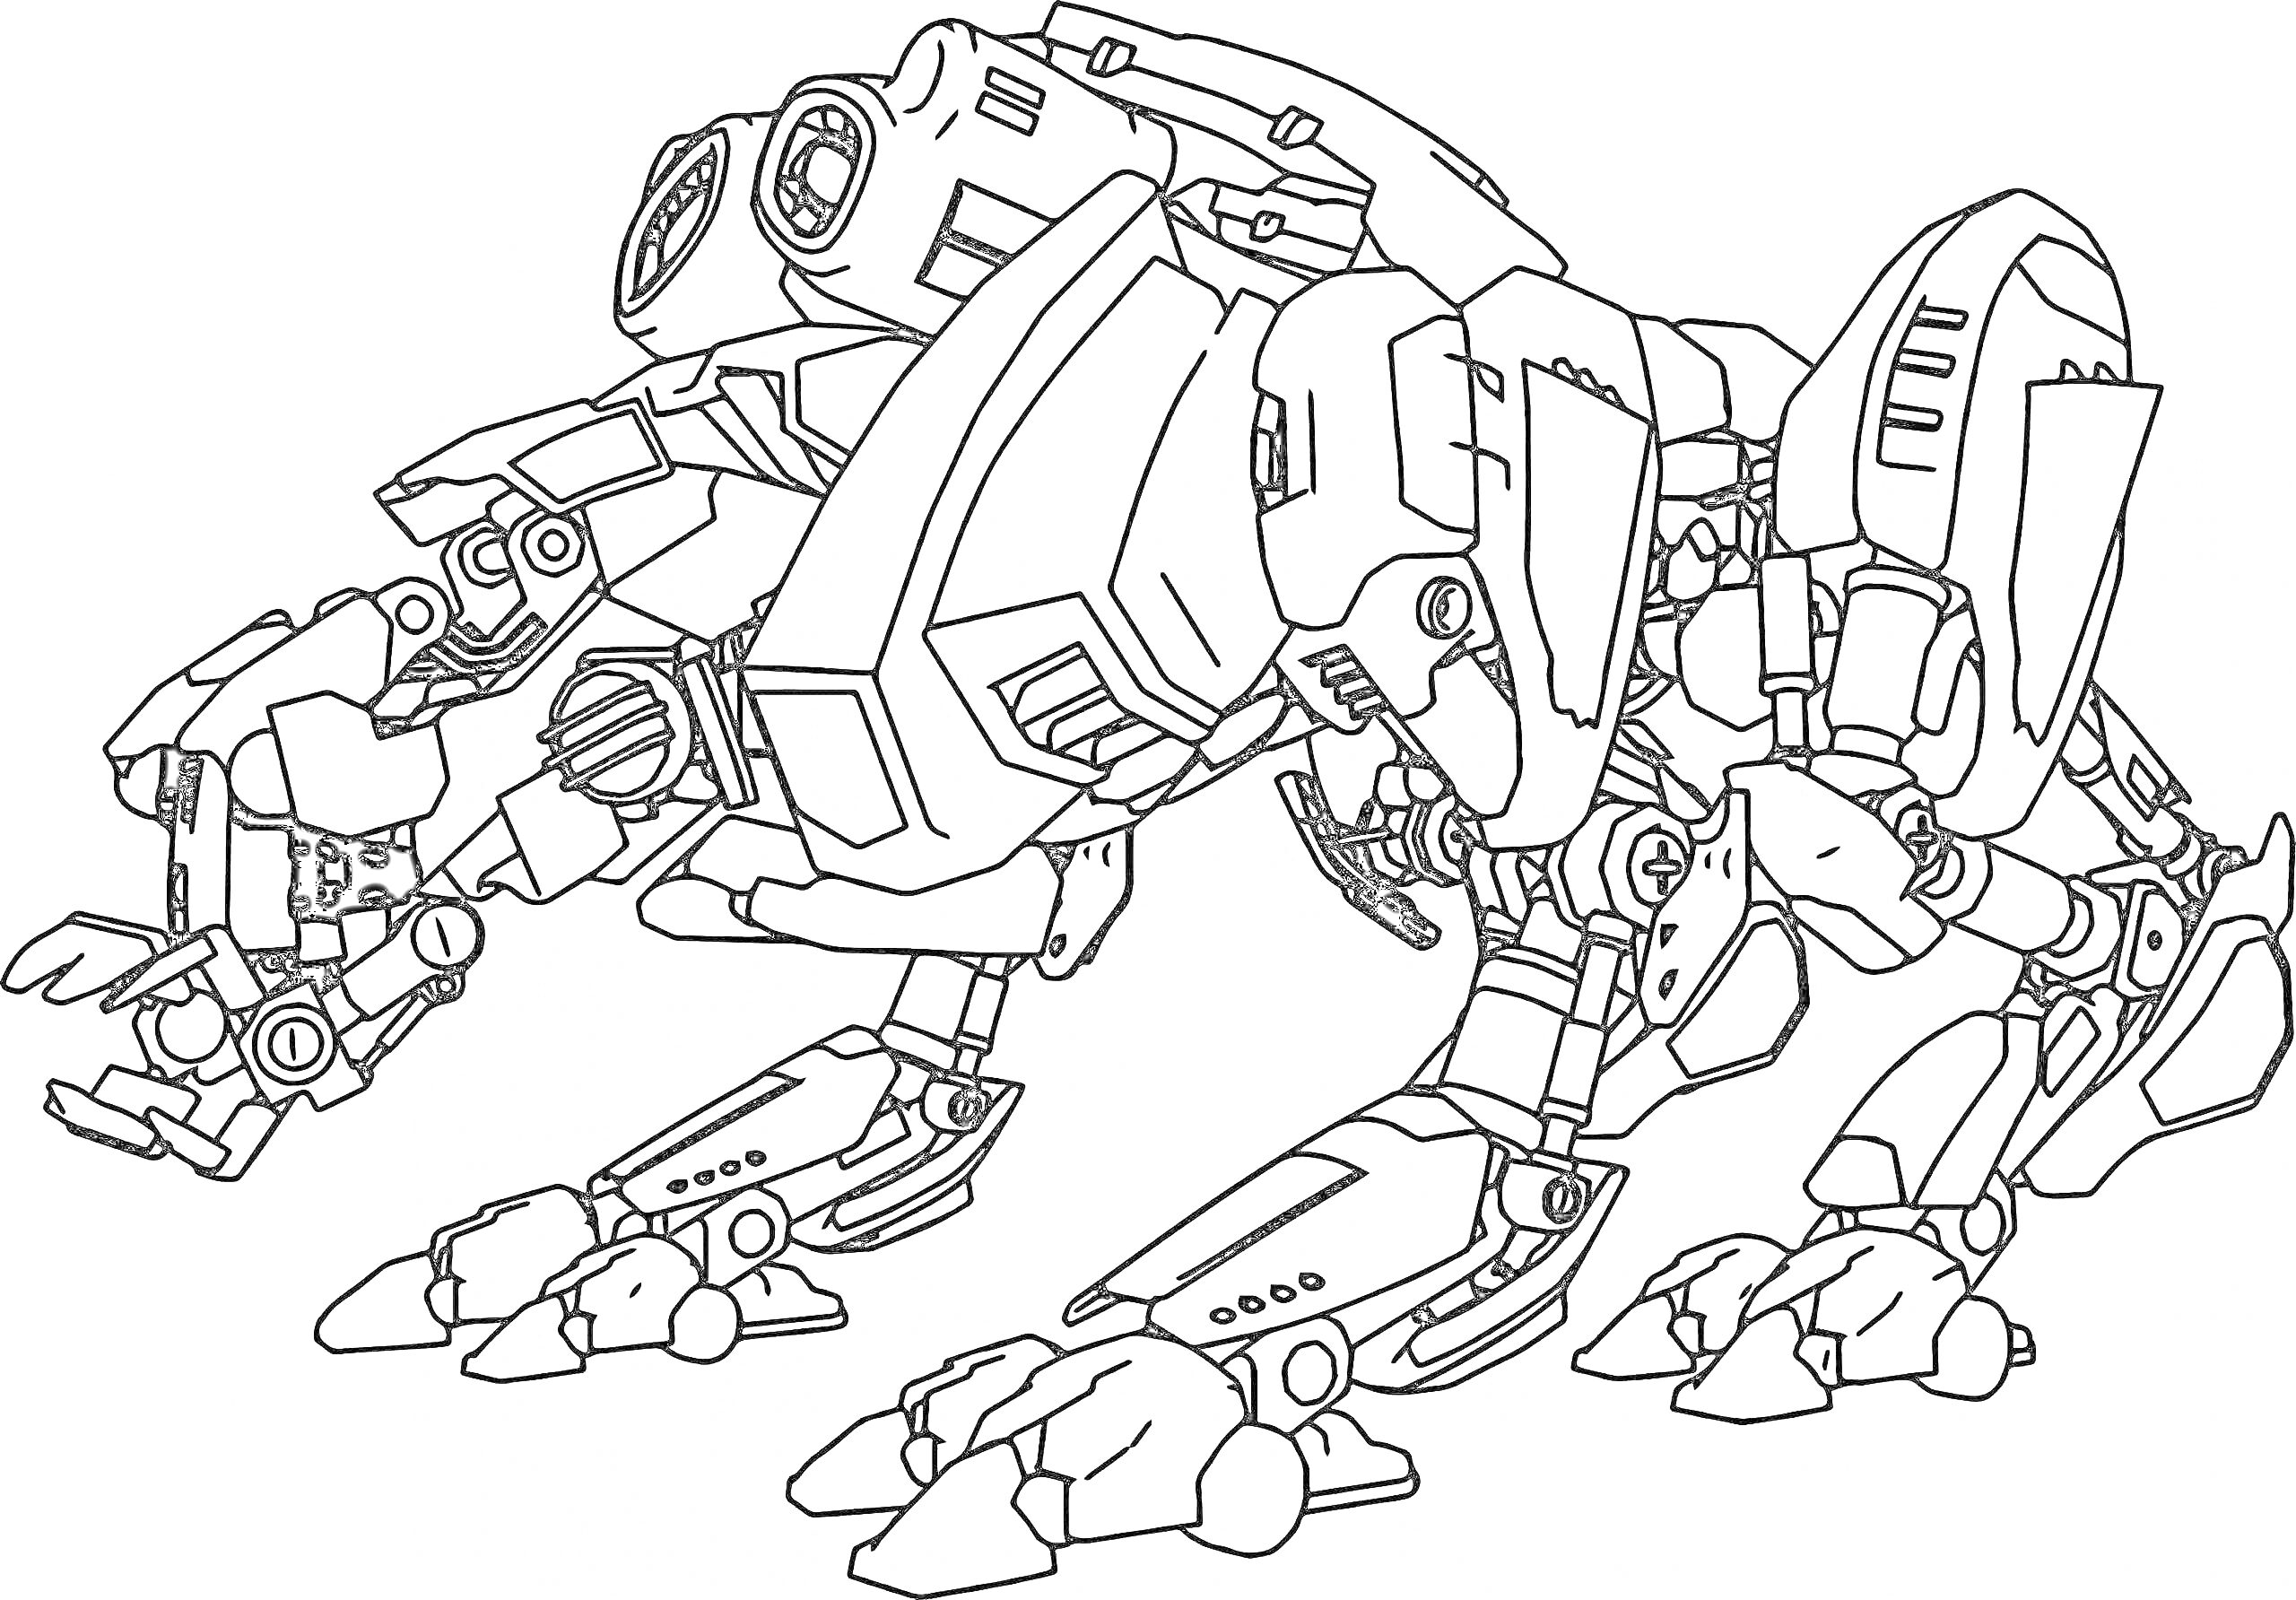 Робот-пантера с лазерными пушками, когтистыми лапами и бронированным корпусом